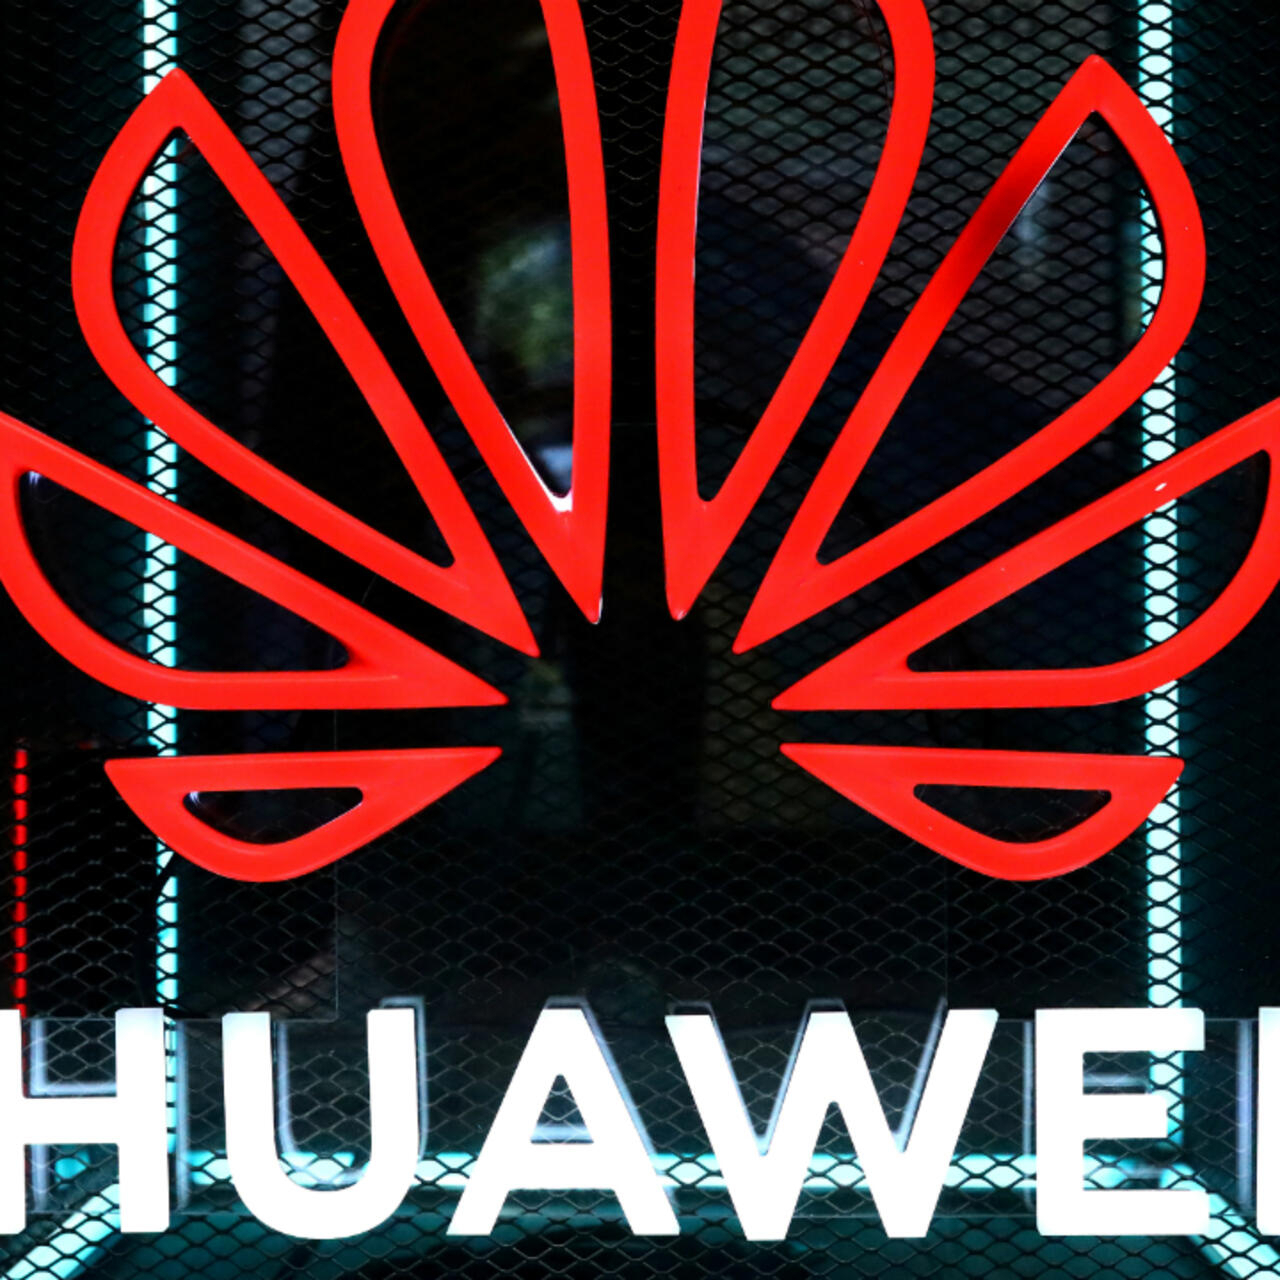 Bị trừng phạt, Huawei đi đầu trong việc lén lút xây dựng chuỗi cung ứng bán dẫn trong nước. Hay nói ví von rằng, những nỗ lực phản công của Huawei giống như các chiến dịch kiểu du kích.